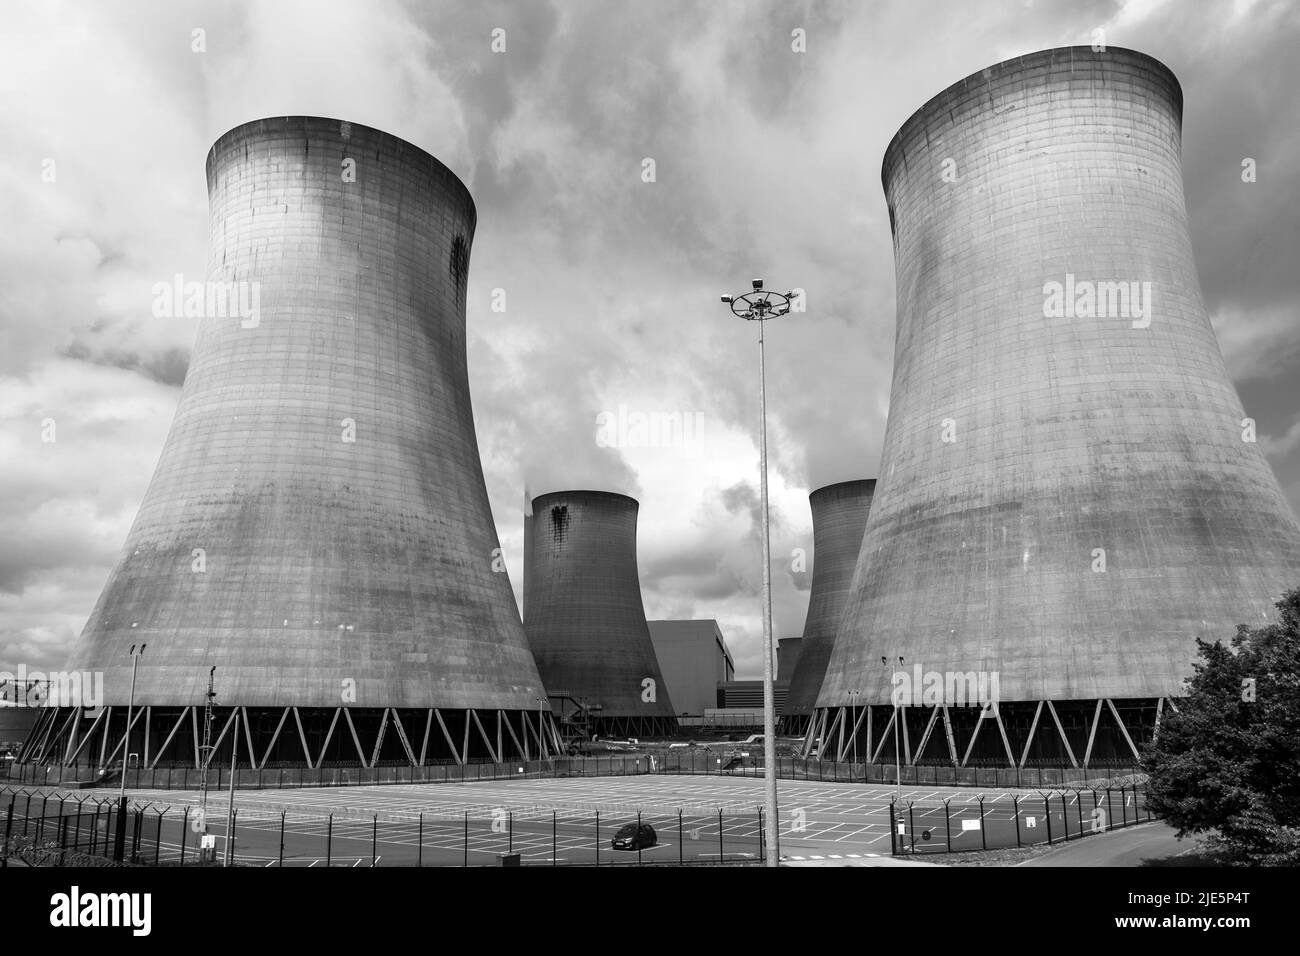 Foto en blanco y negro de las torres de refrigeración de la central eléctrica Drax y STEAM, una central eléctrica en North Yorkshire, Inglaterra, Reino Unido. Foto de stock